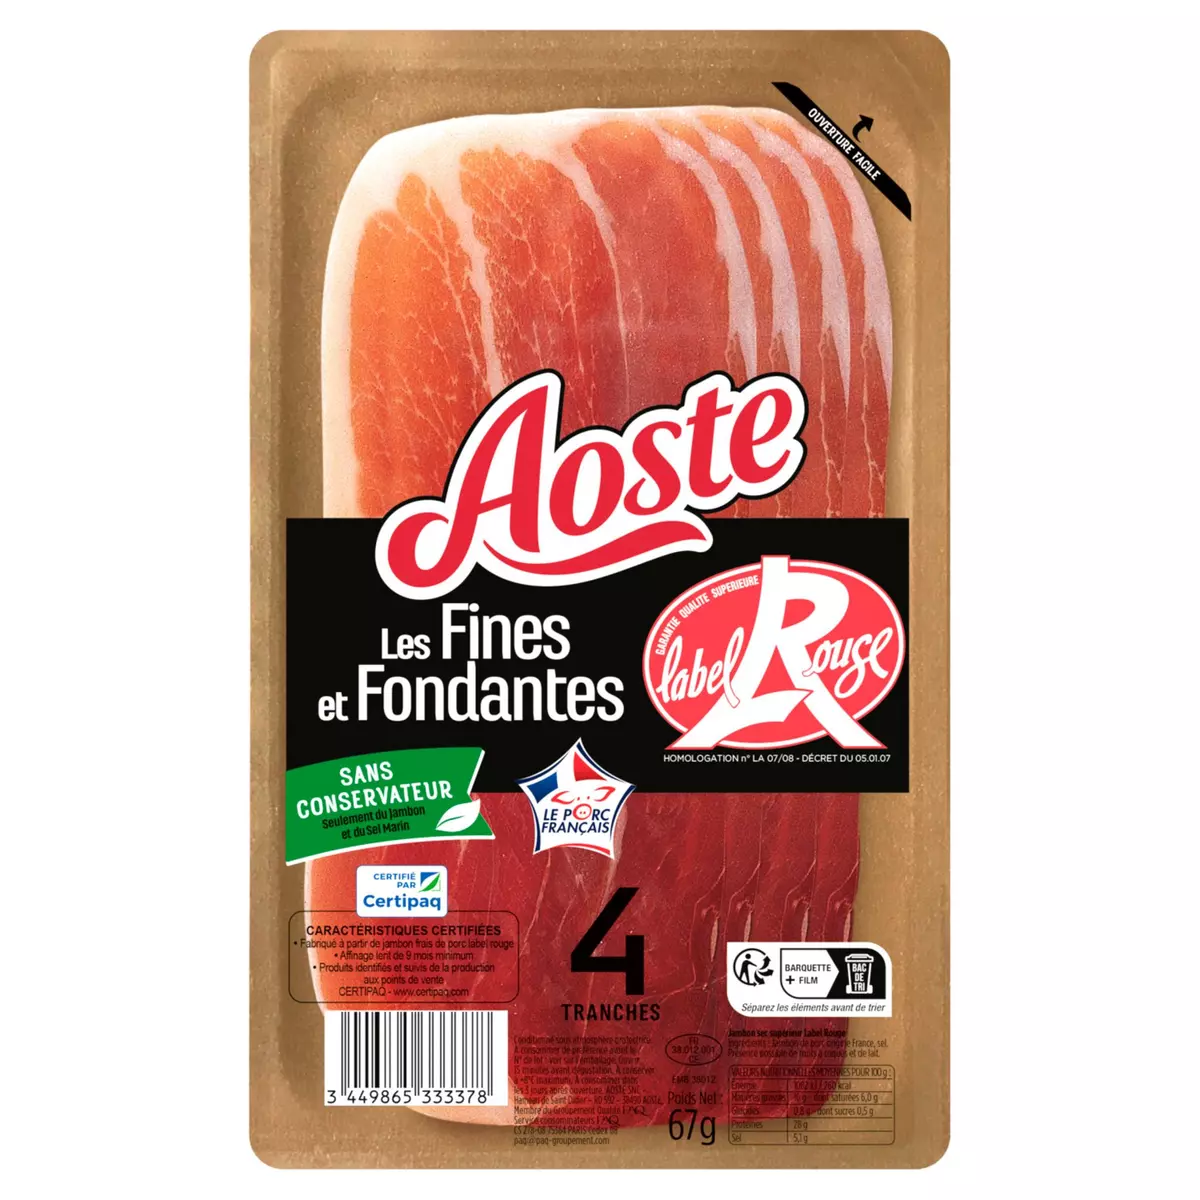 AOSTE Fines et fondantes jambon cru Label Rouge 4 tranches 67g